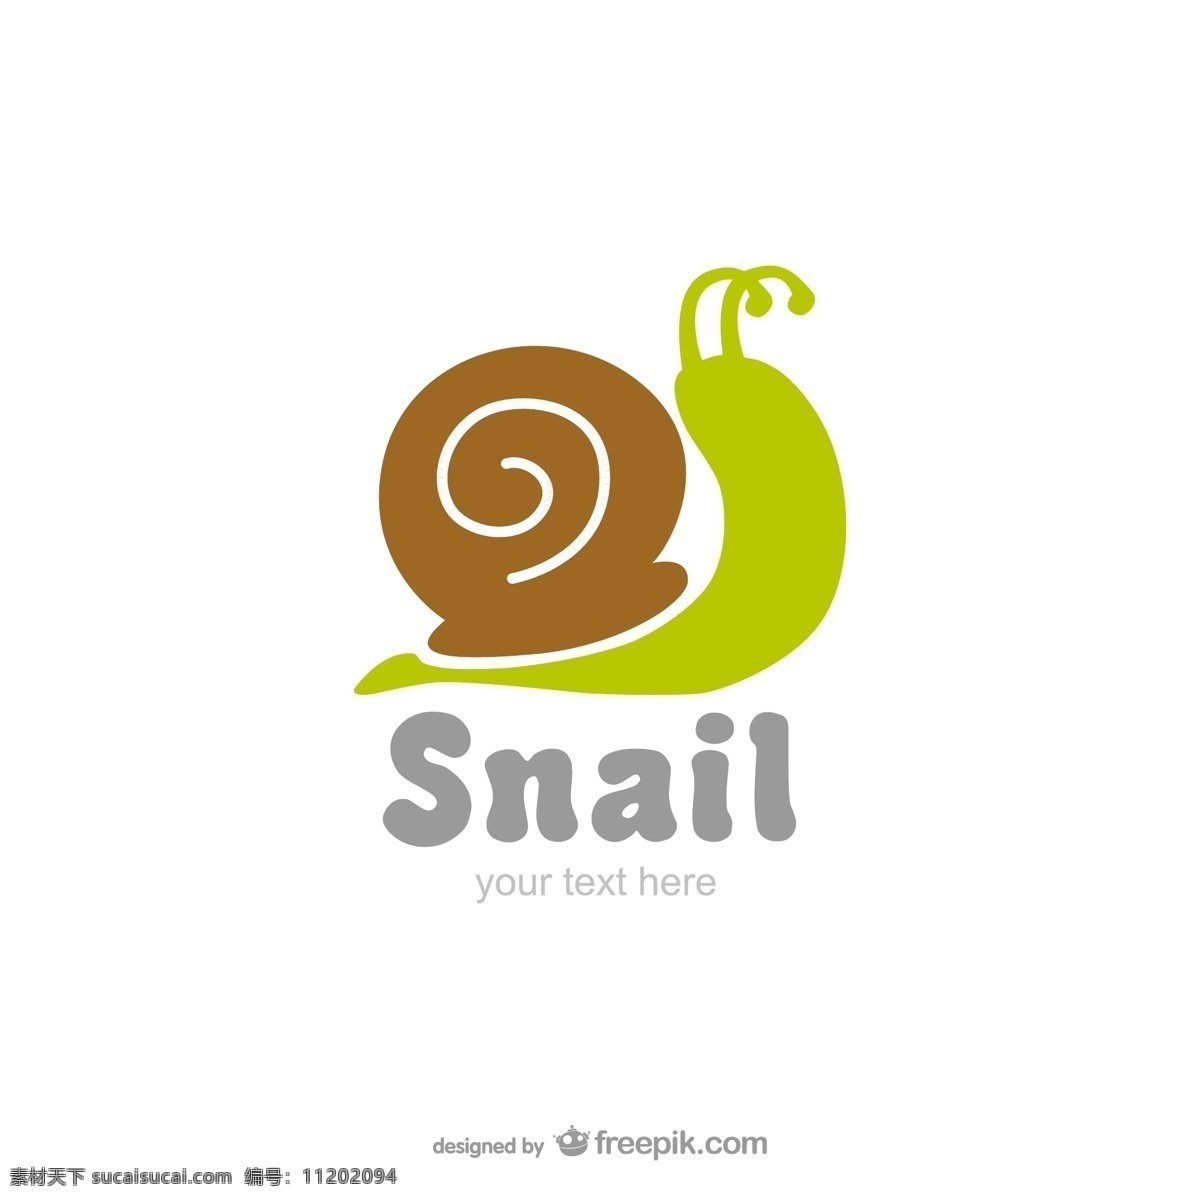 蜗牛 矢量蜗牛 卡通蜗牛 蜗牛标志 蜗牛logo 标志设计 企业 logo 标志 标识标志图标 矢量